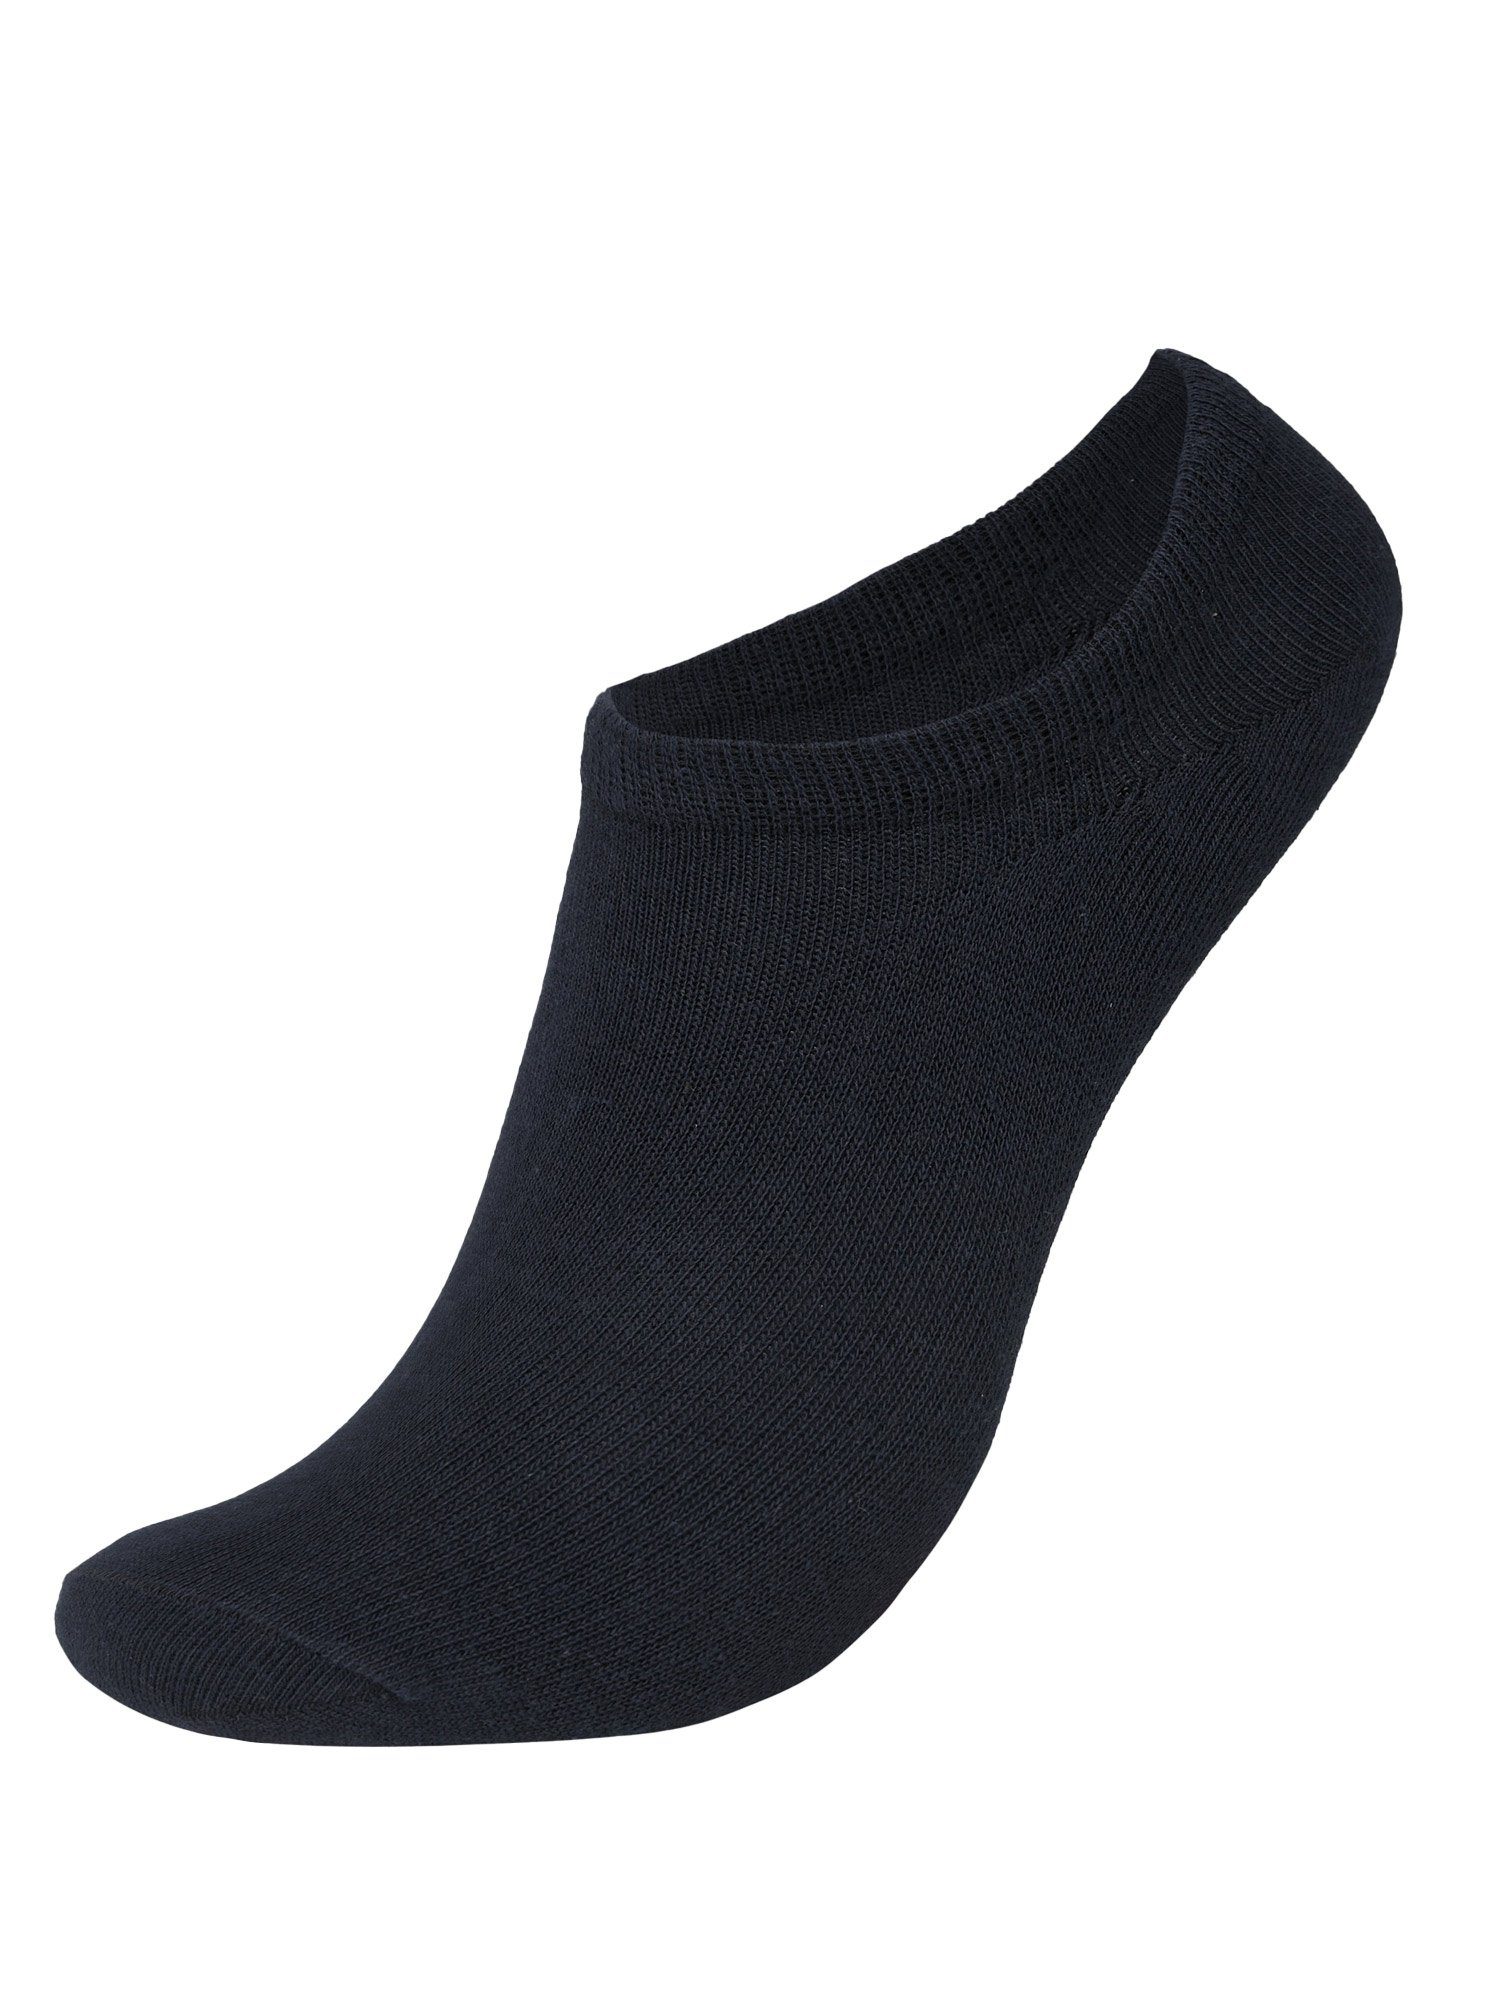 Sneaker 6er-Pack Füßlinge Socken Herren Lavecchia schwarz (Packung, 6-Paar) Socken LV-902